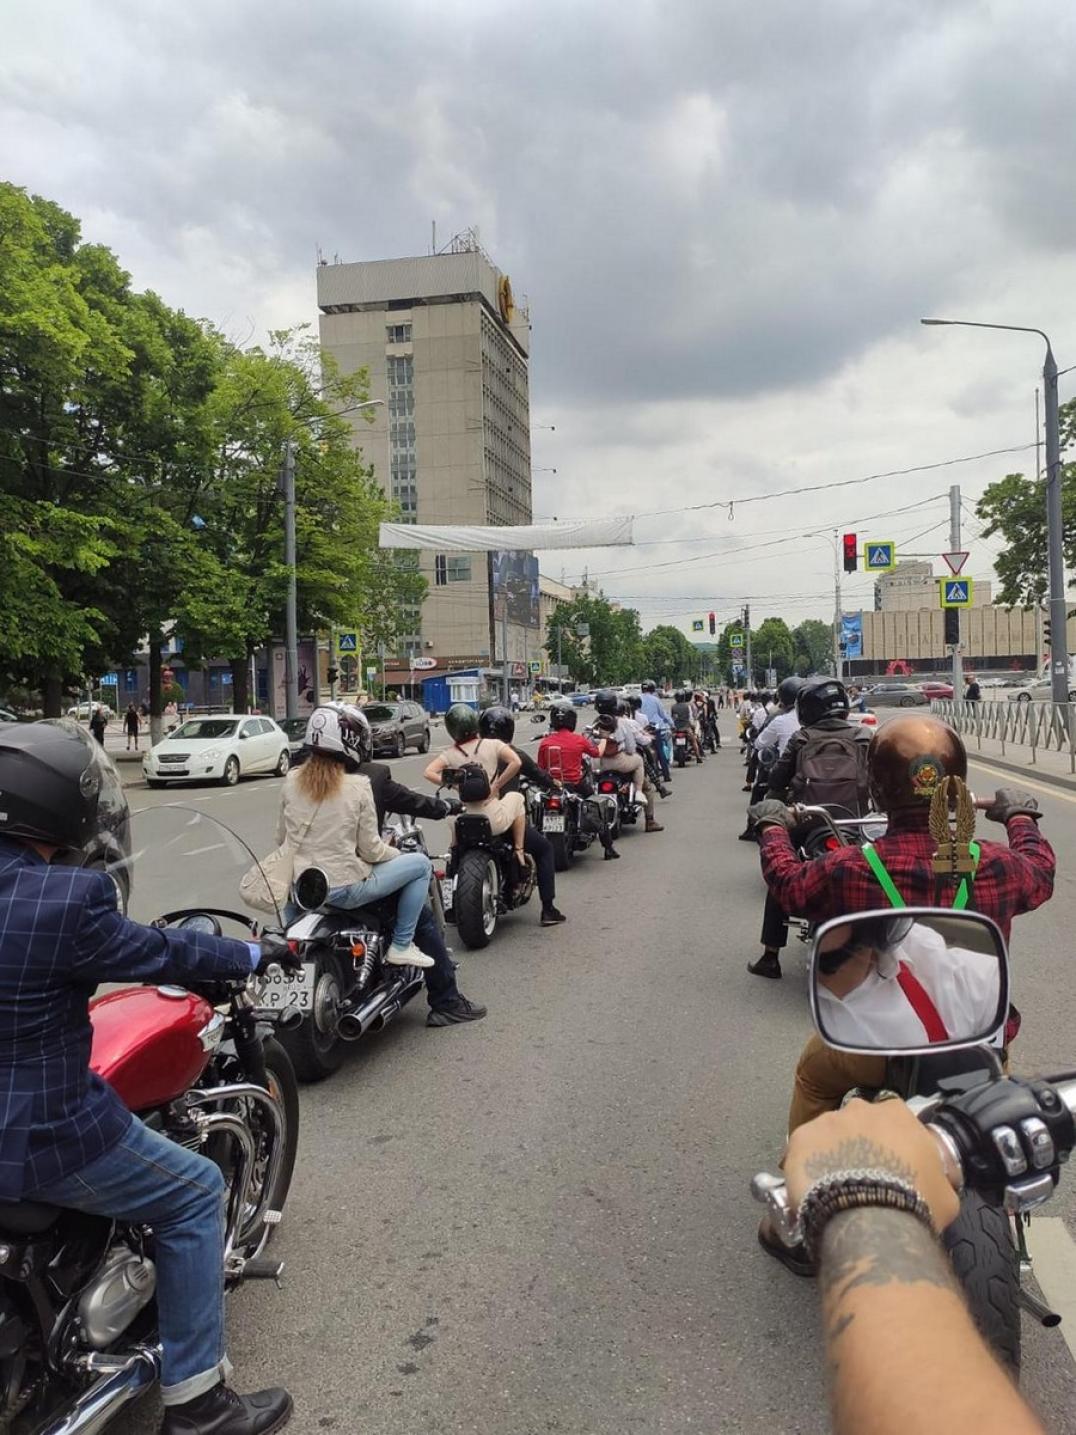 Леди и джентльмены на мотоциклах в Краснодаре